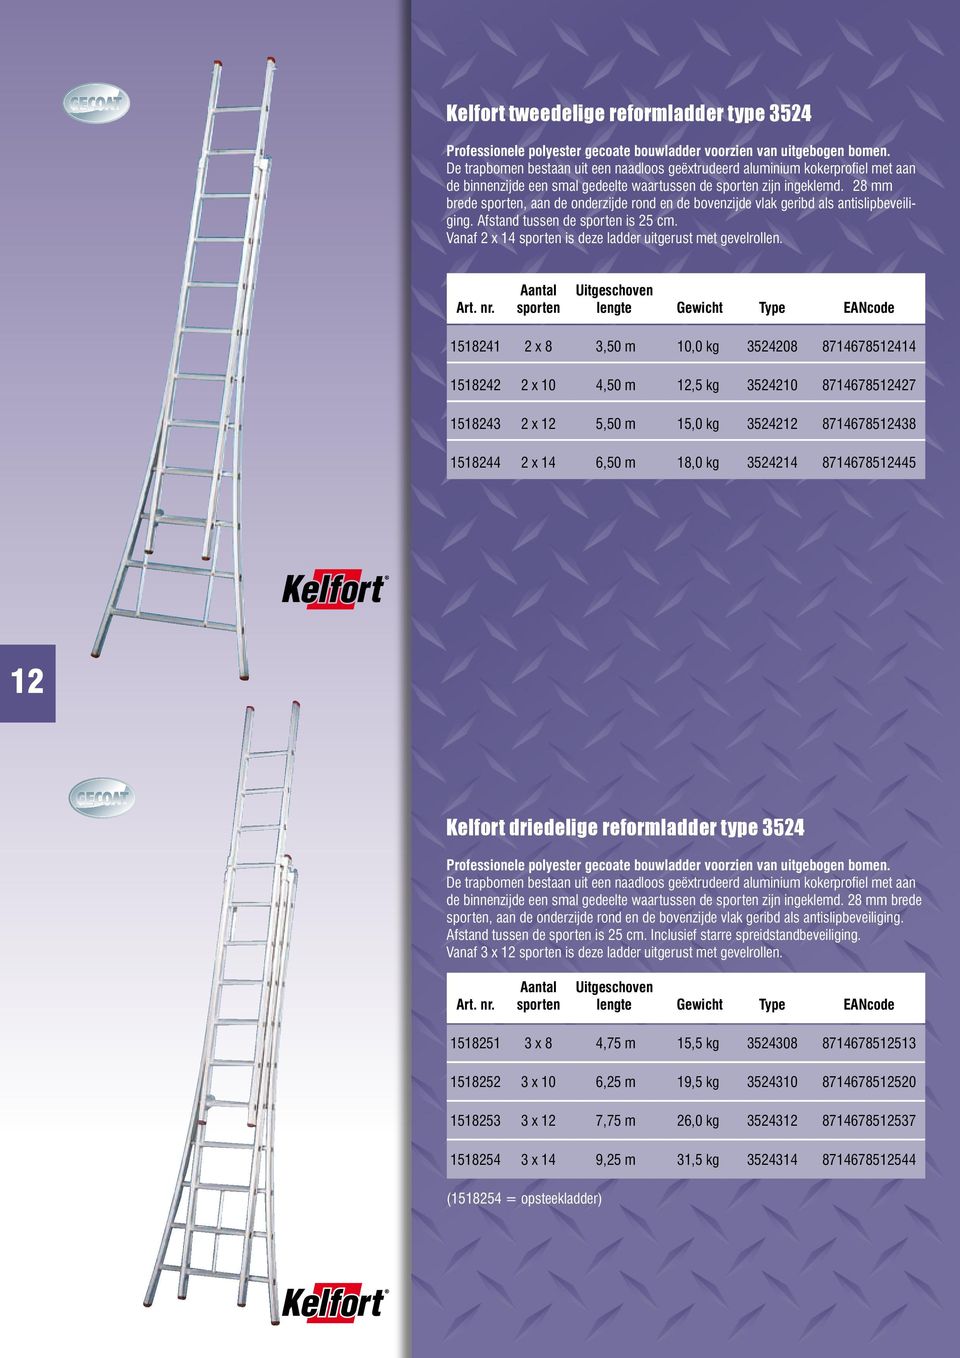 28 mm brede sporten, aan de onderzijde rond en de bovenzijde vlak geribd als antislipbeveiliging. Afstand tussen de sporten is 25 cm. Vanaf 2 x 14 sporten is deze ladder uitgerust met gevelrollen.